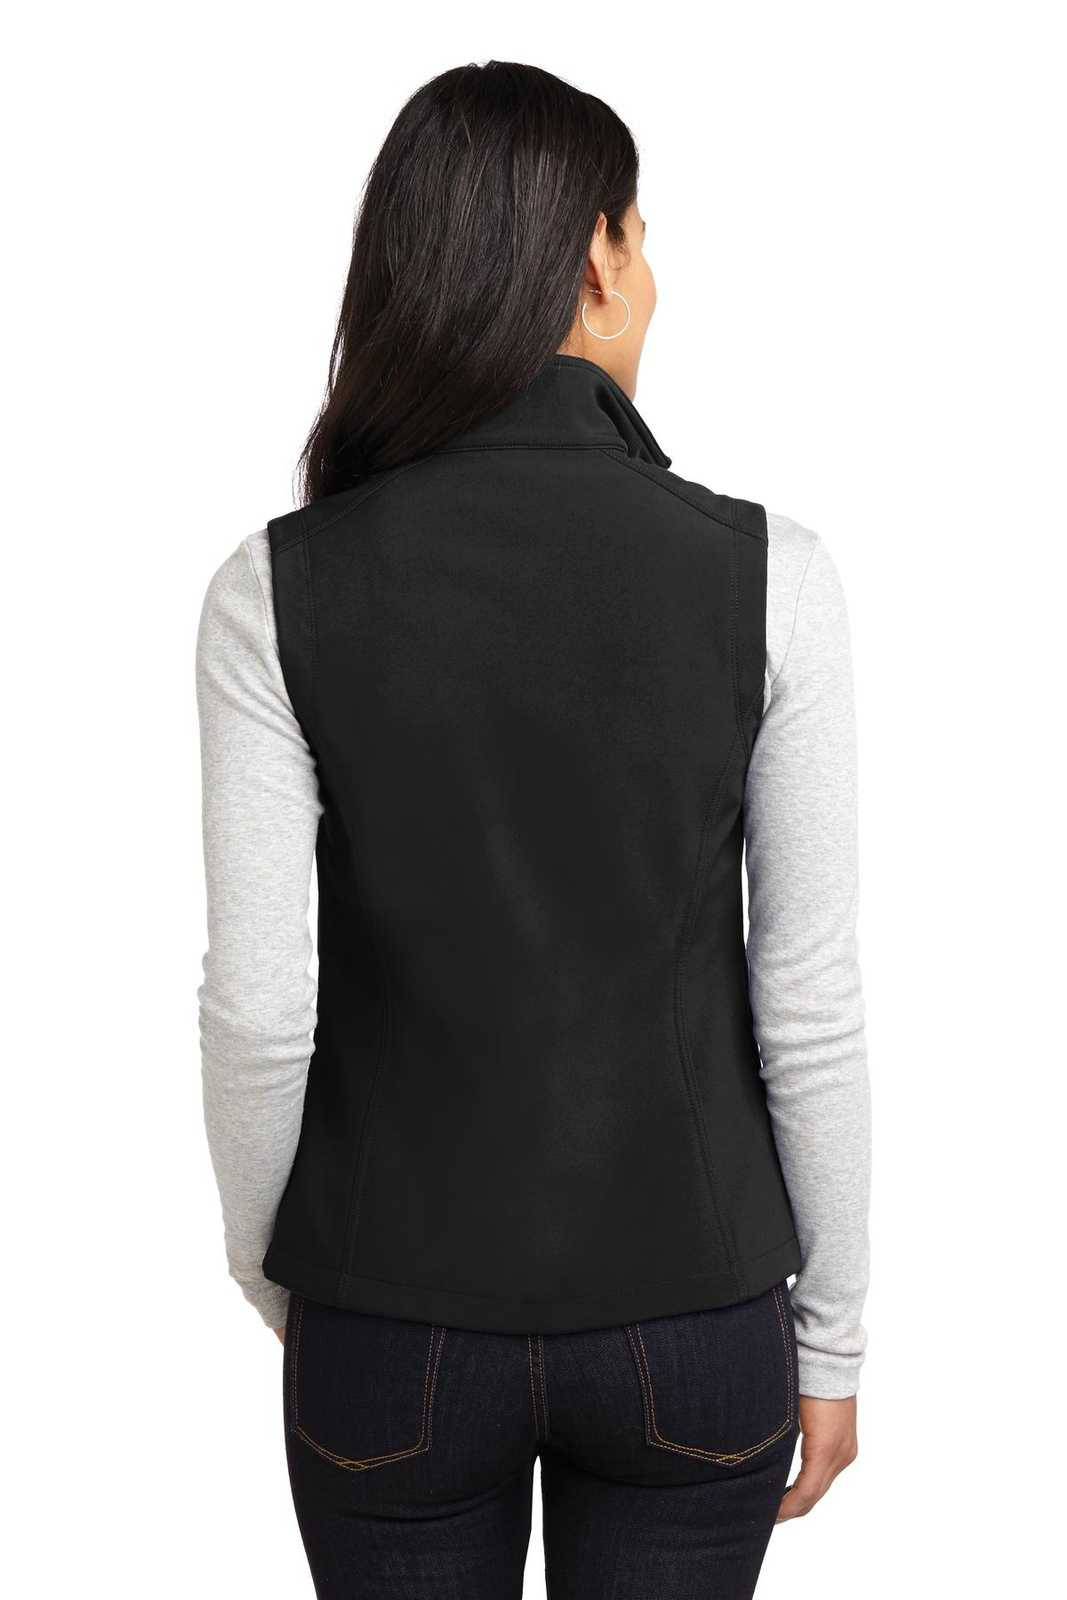 Port Authority L325 Ladies Core Soft Shell Vest - Black - HIT a Double - 2